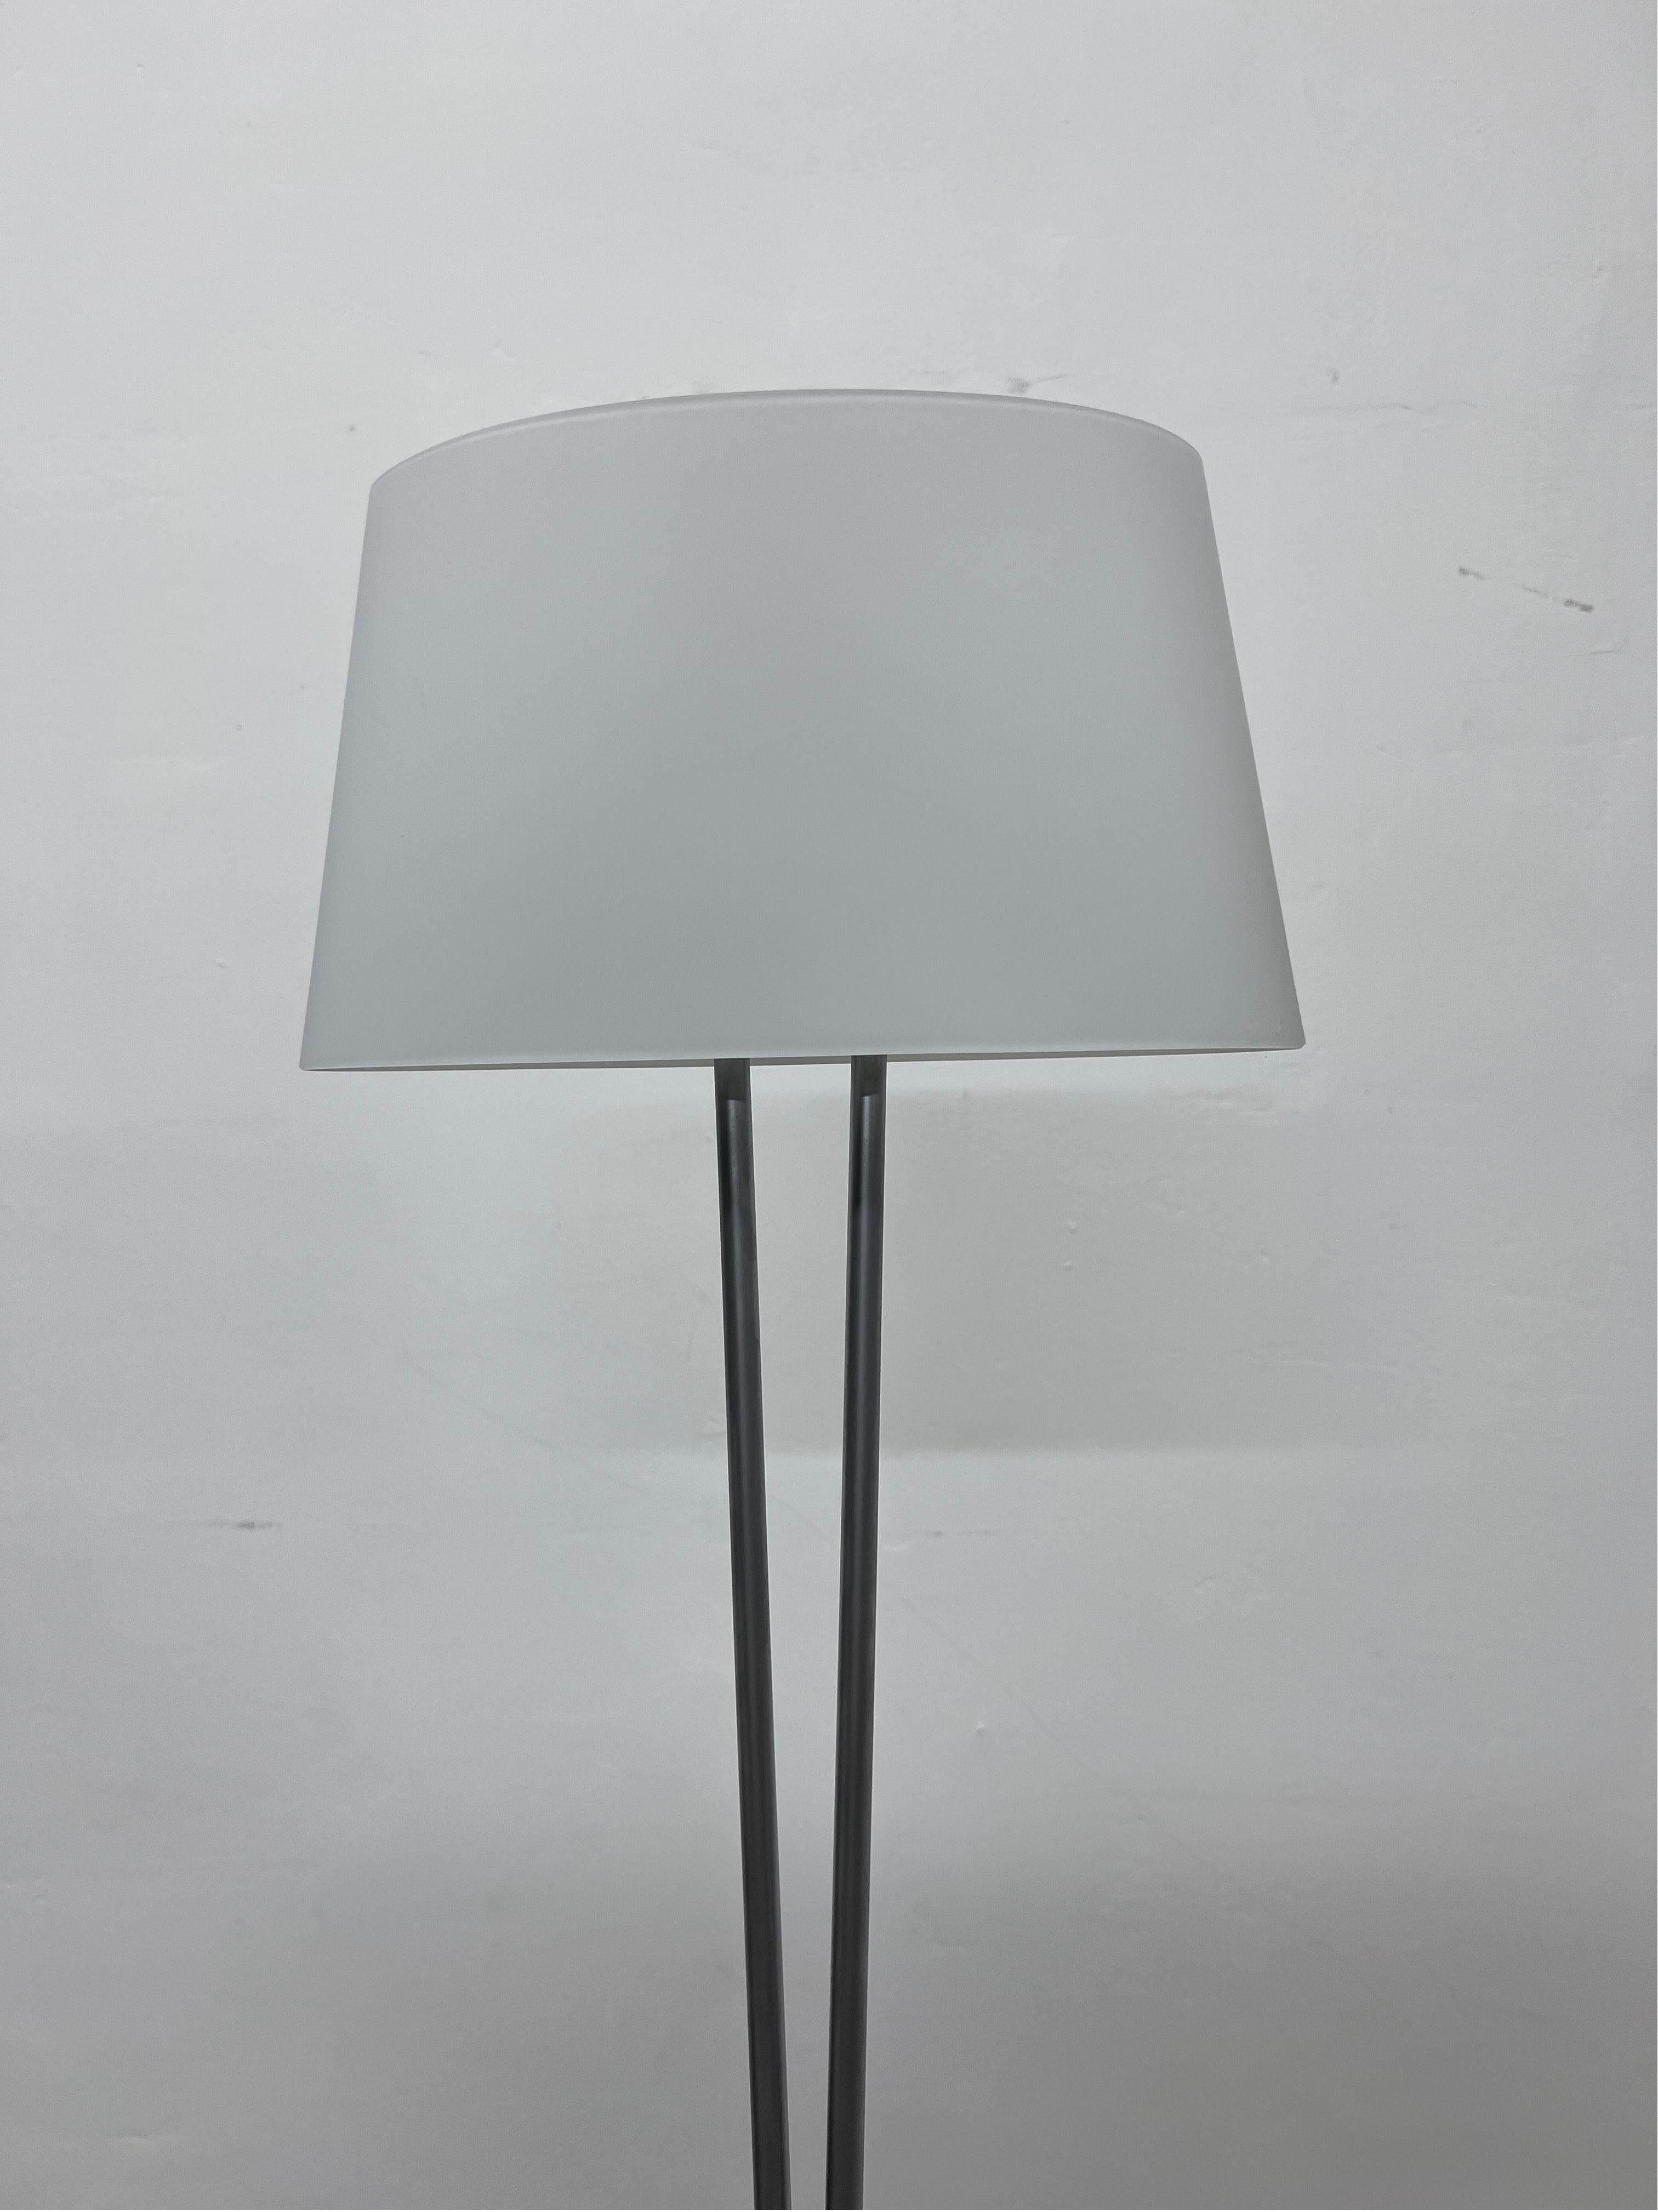 Valerio Bottin Vitt Terra Series White Murano and Steel Floor Lamp for Foscarini For Sale 2